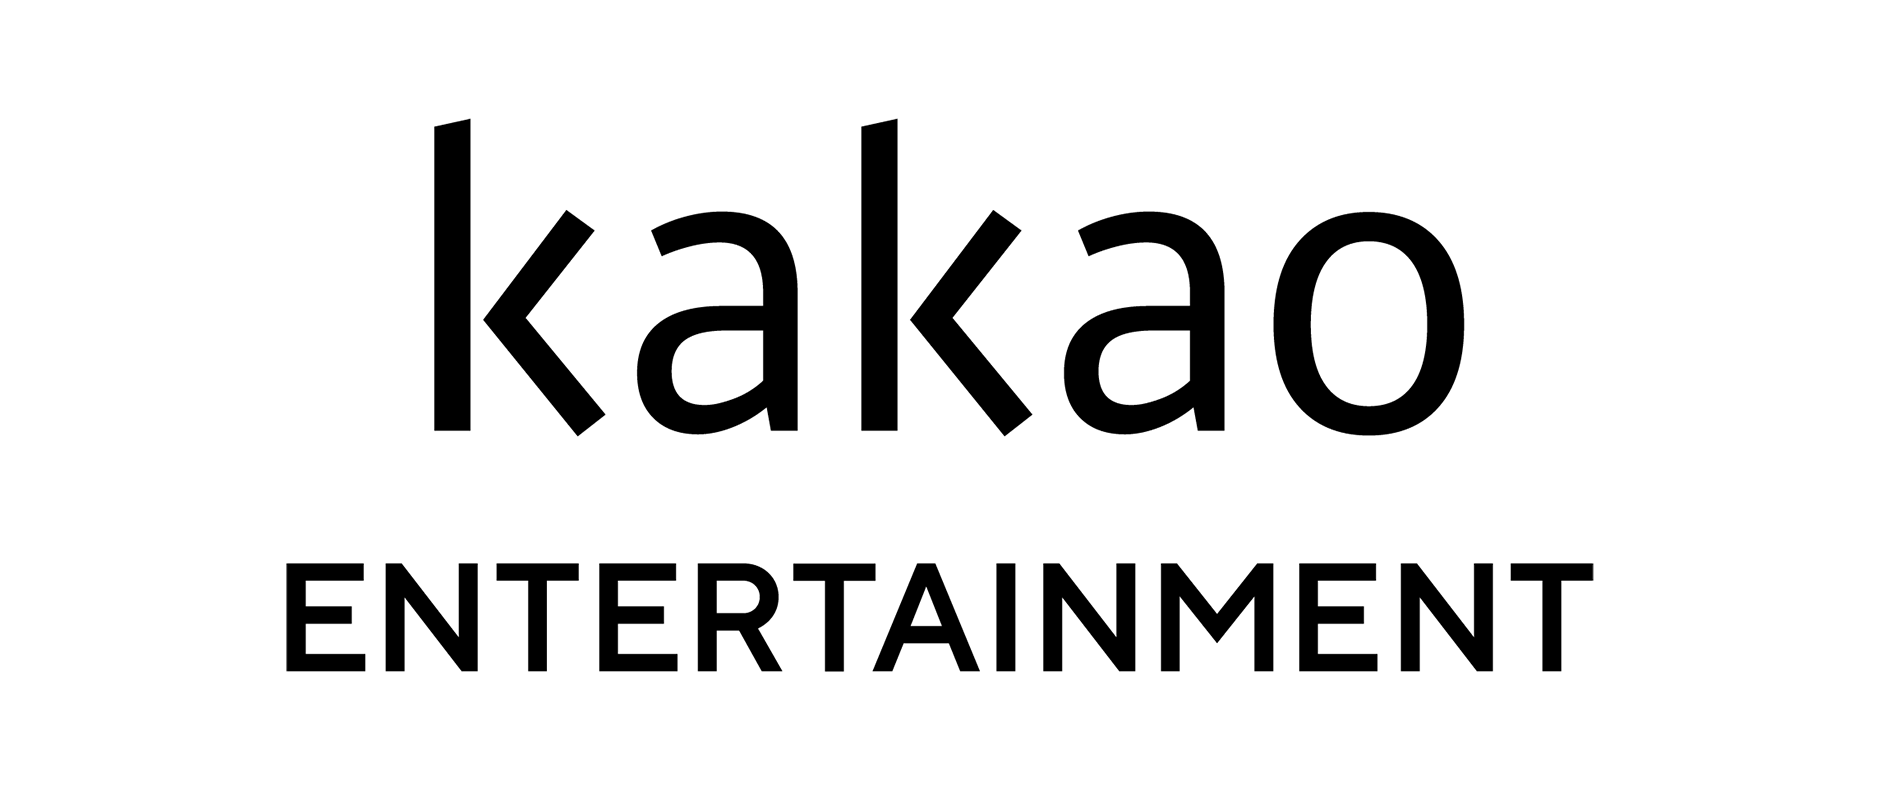 카카오의 계열사 (주)카카오엔터테인먼트의 로고